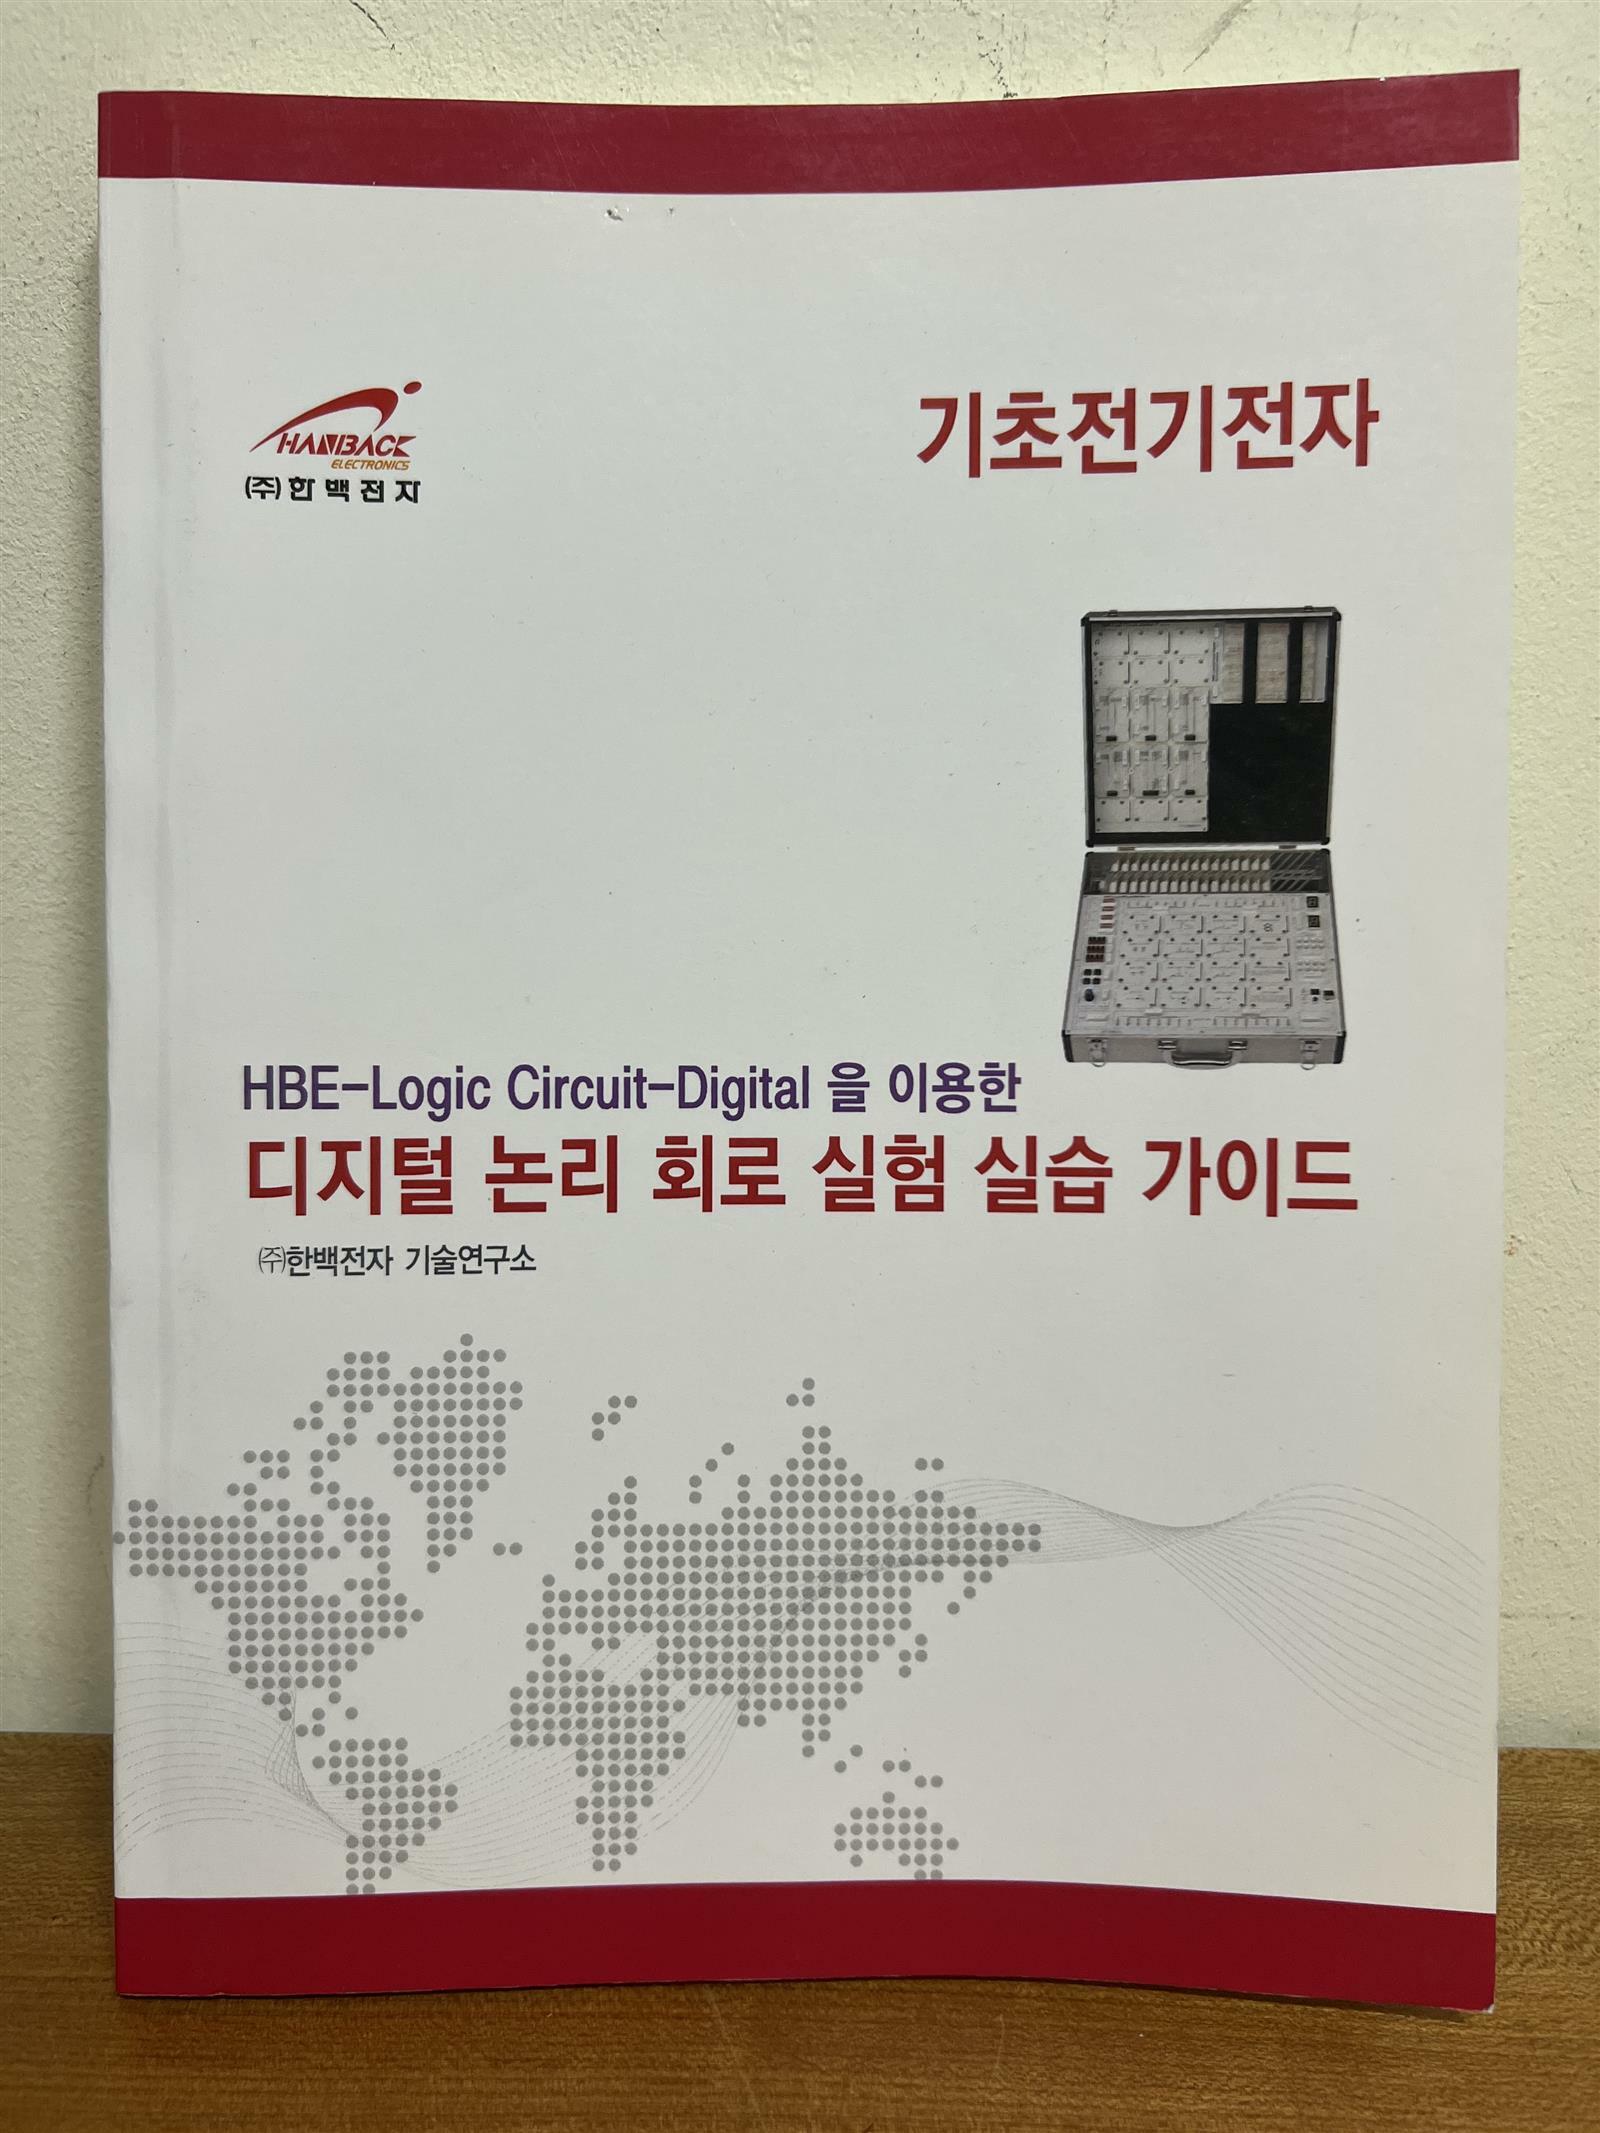 [중고] HBE-Logic Circuit-Digital을 이용한 디지털 논리 회로 실험 실습 가이드(2010년 발행)